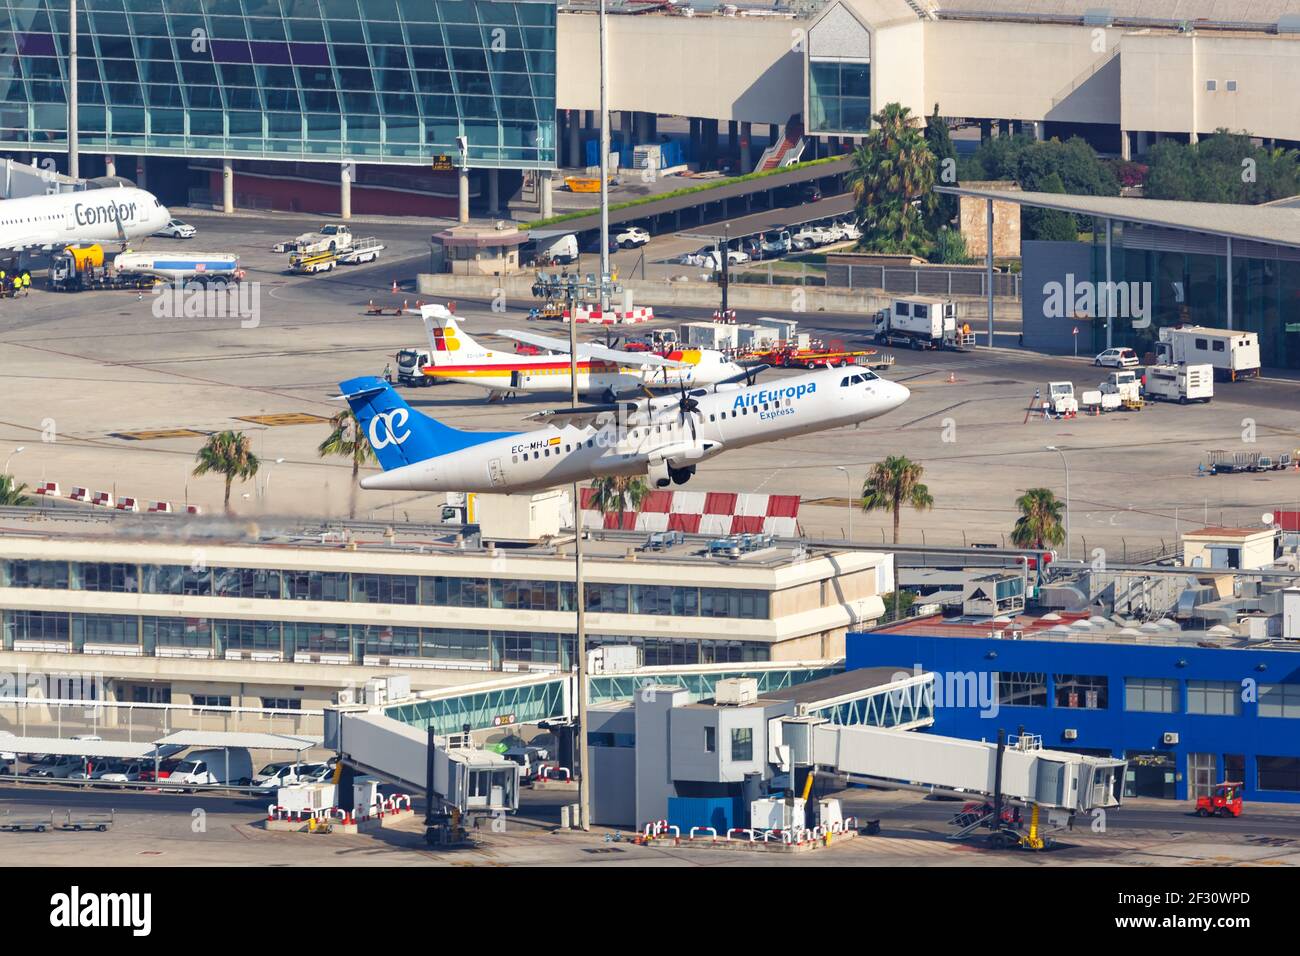 Palma de Mallorca, Spagna - 21 luglio 2018: Foto aerea di un aereo Air Europa Express ATR-72 all'aeroporto di Palma de Mallorca in Spagna. Foto Stock